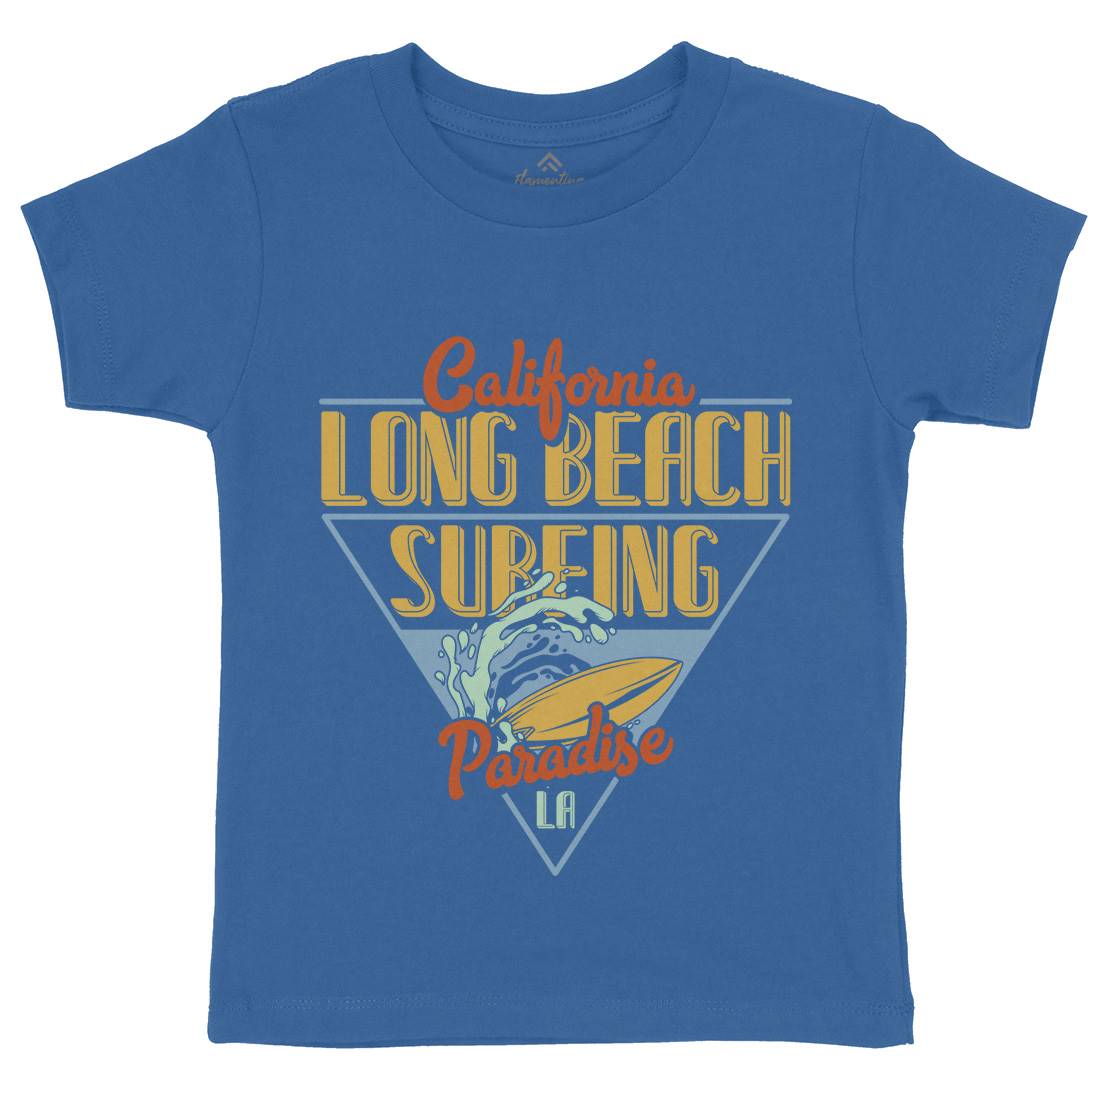 Long Beach Surfing Kids Crew Neck T-Shirt Surf B359